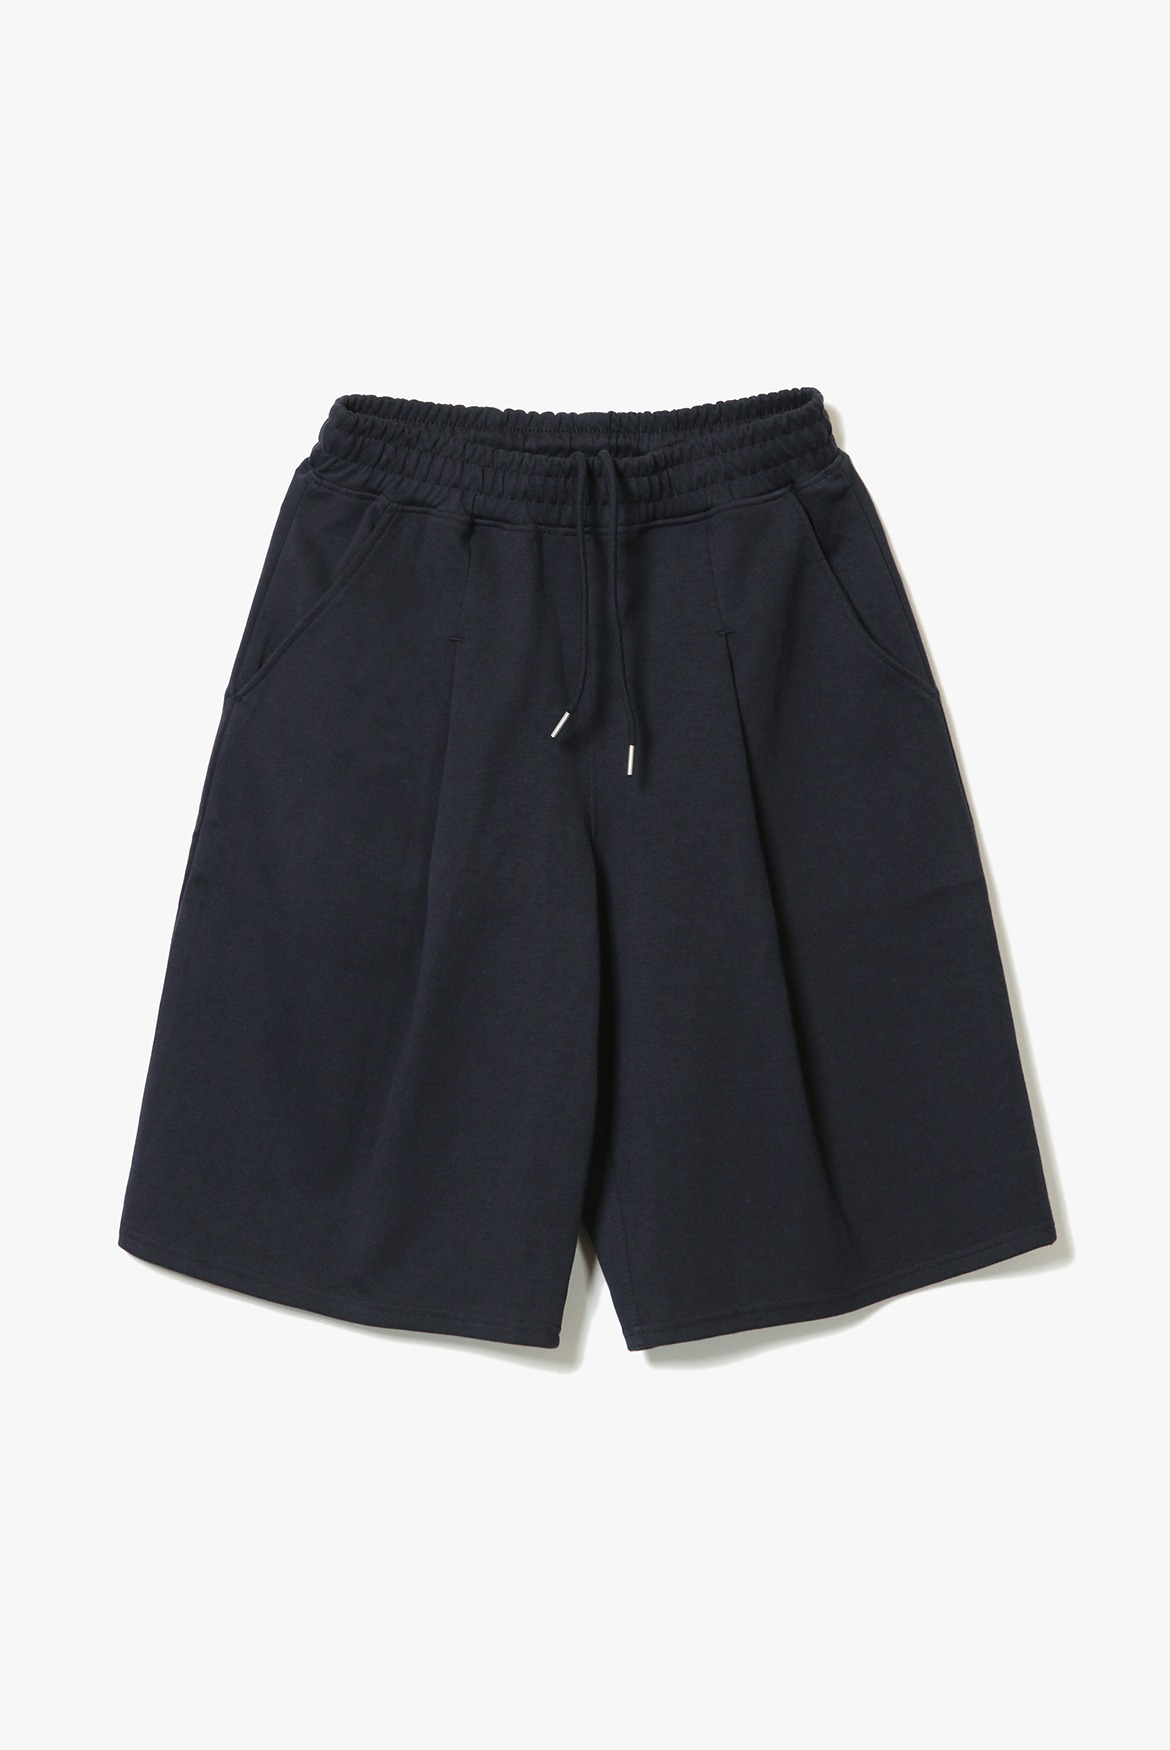 (5월 14일 S, L 사이즈만 예약 배송) Deep One Tuck Sweat Shorts [Navy]